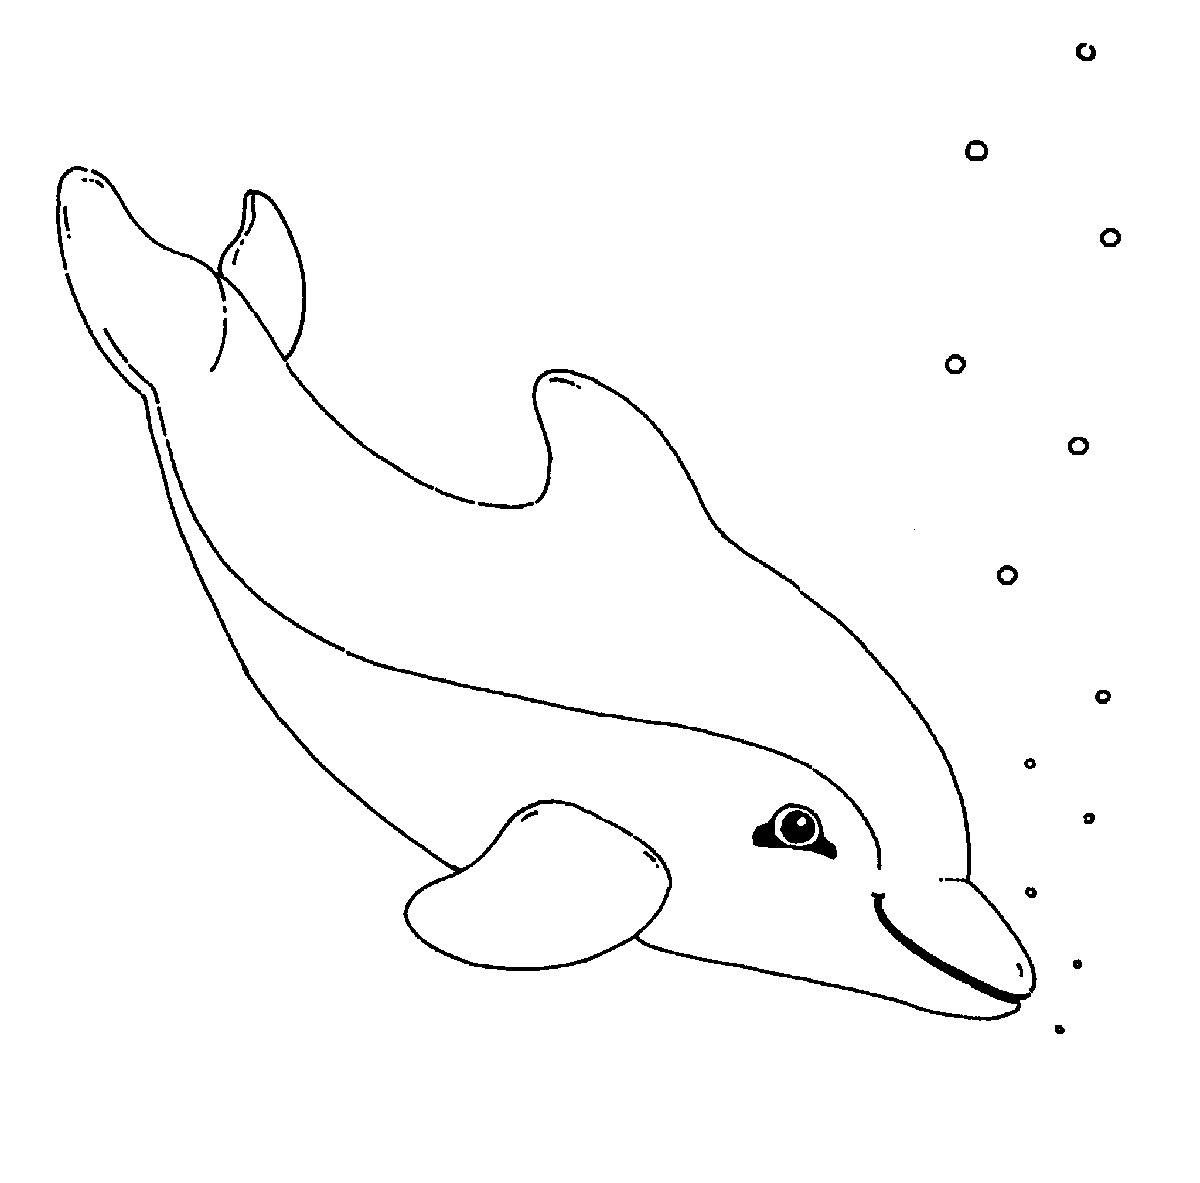 Malvorlagen Delfin
 Kostenlose Malvorlage Delfine und Wale Ausmalbild Delfin